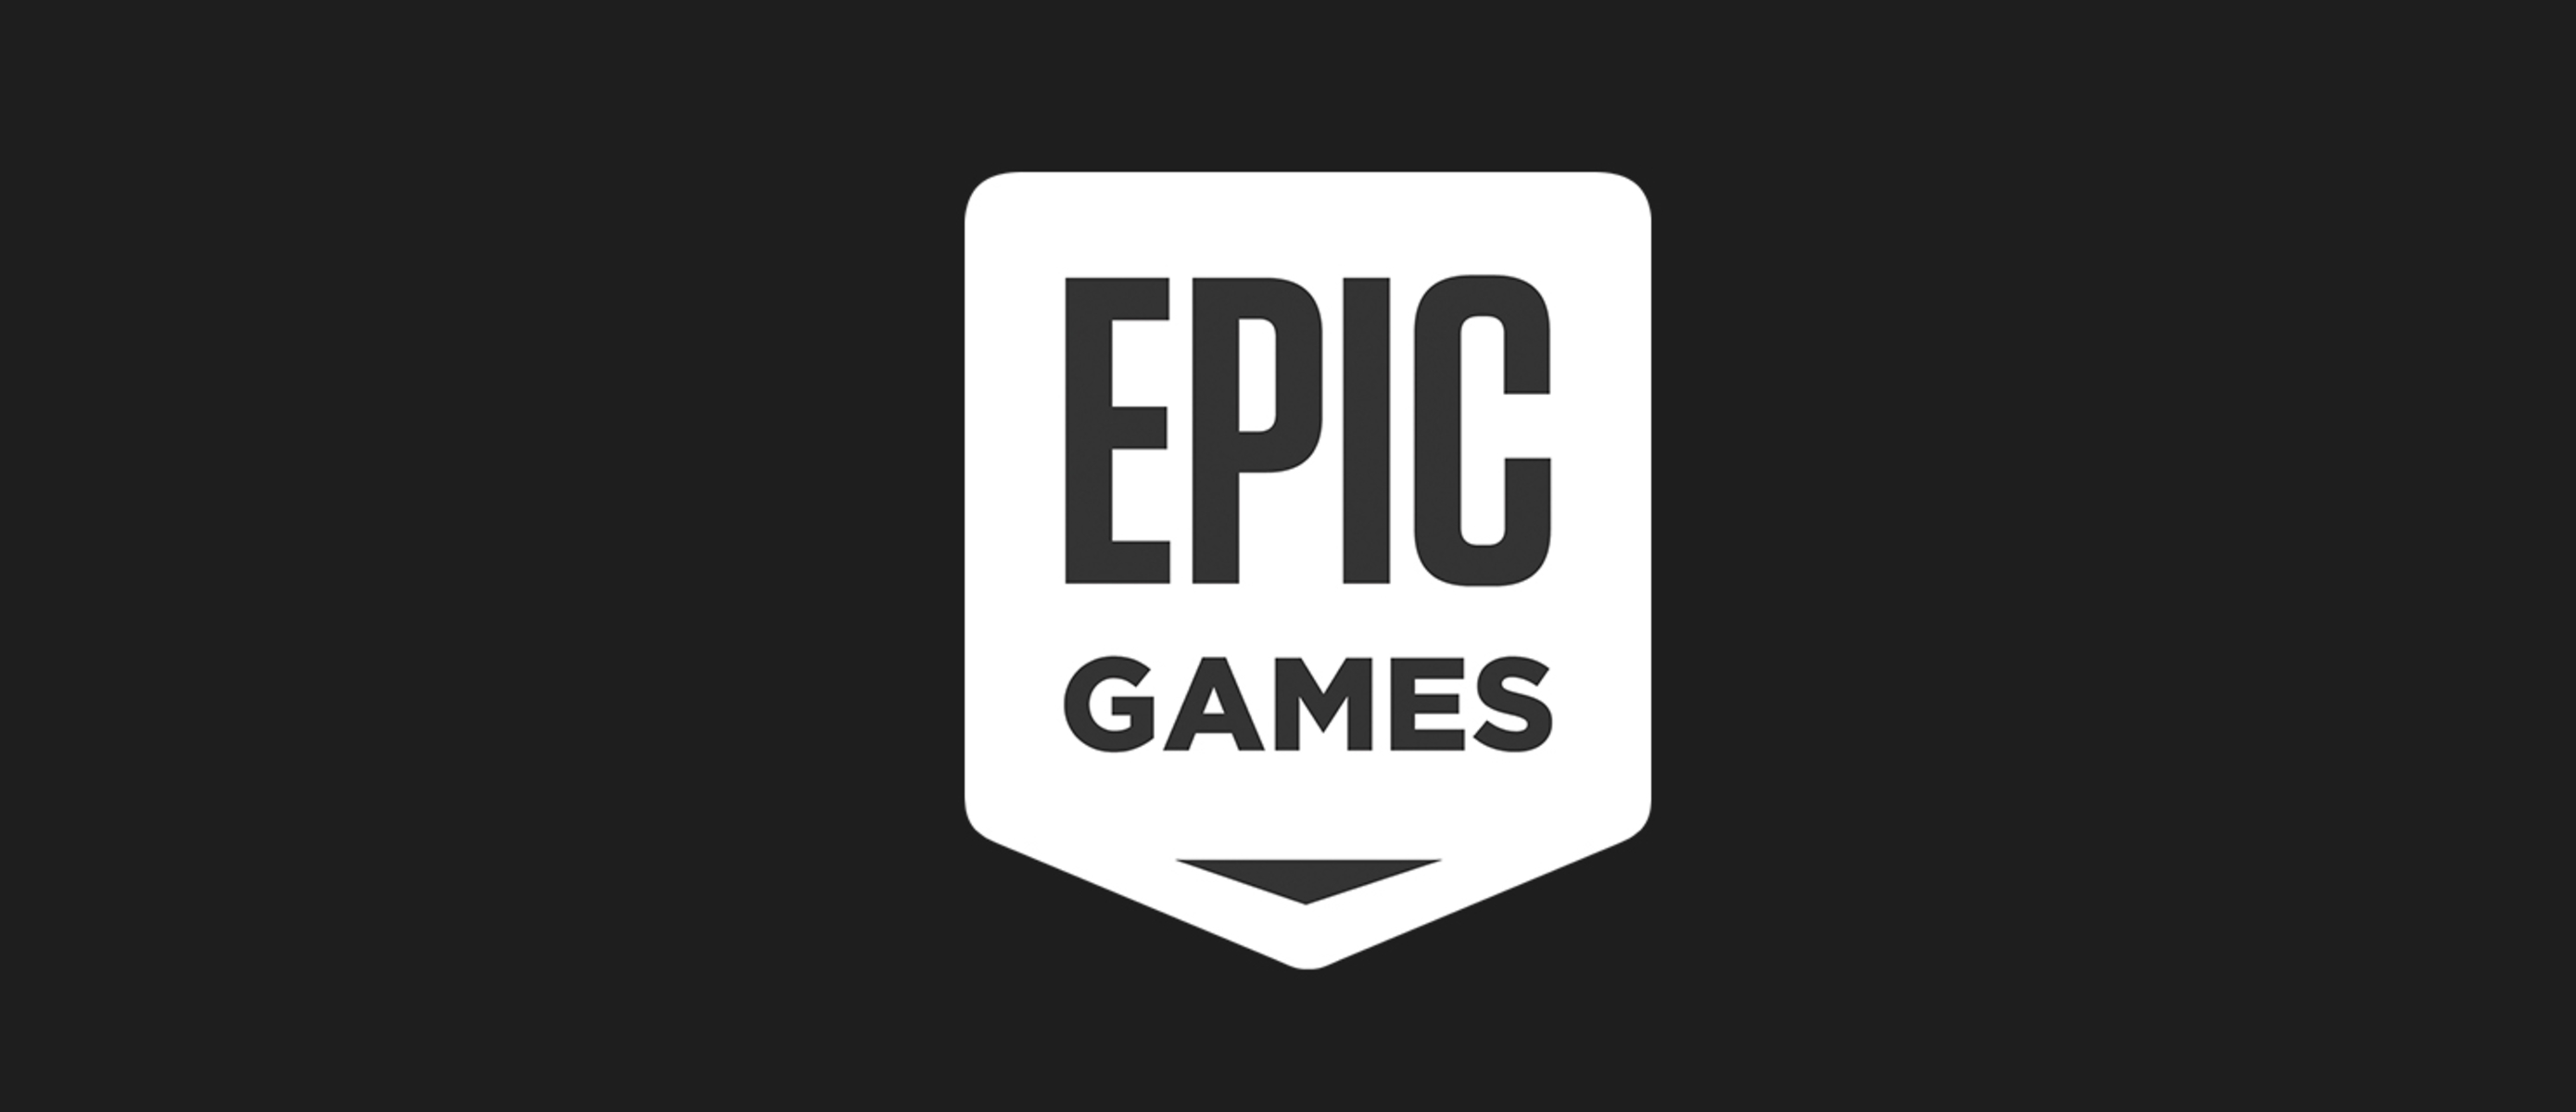 Epic games us. ЭПИК геймс. Логотип Epic games. ЭПИК гейм стор. ЭПИК геймс обложка.